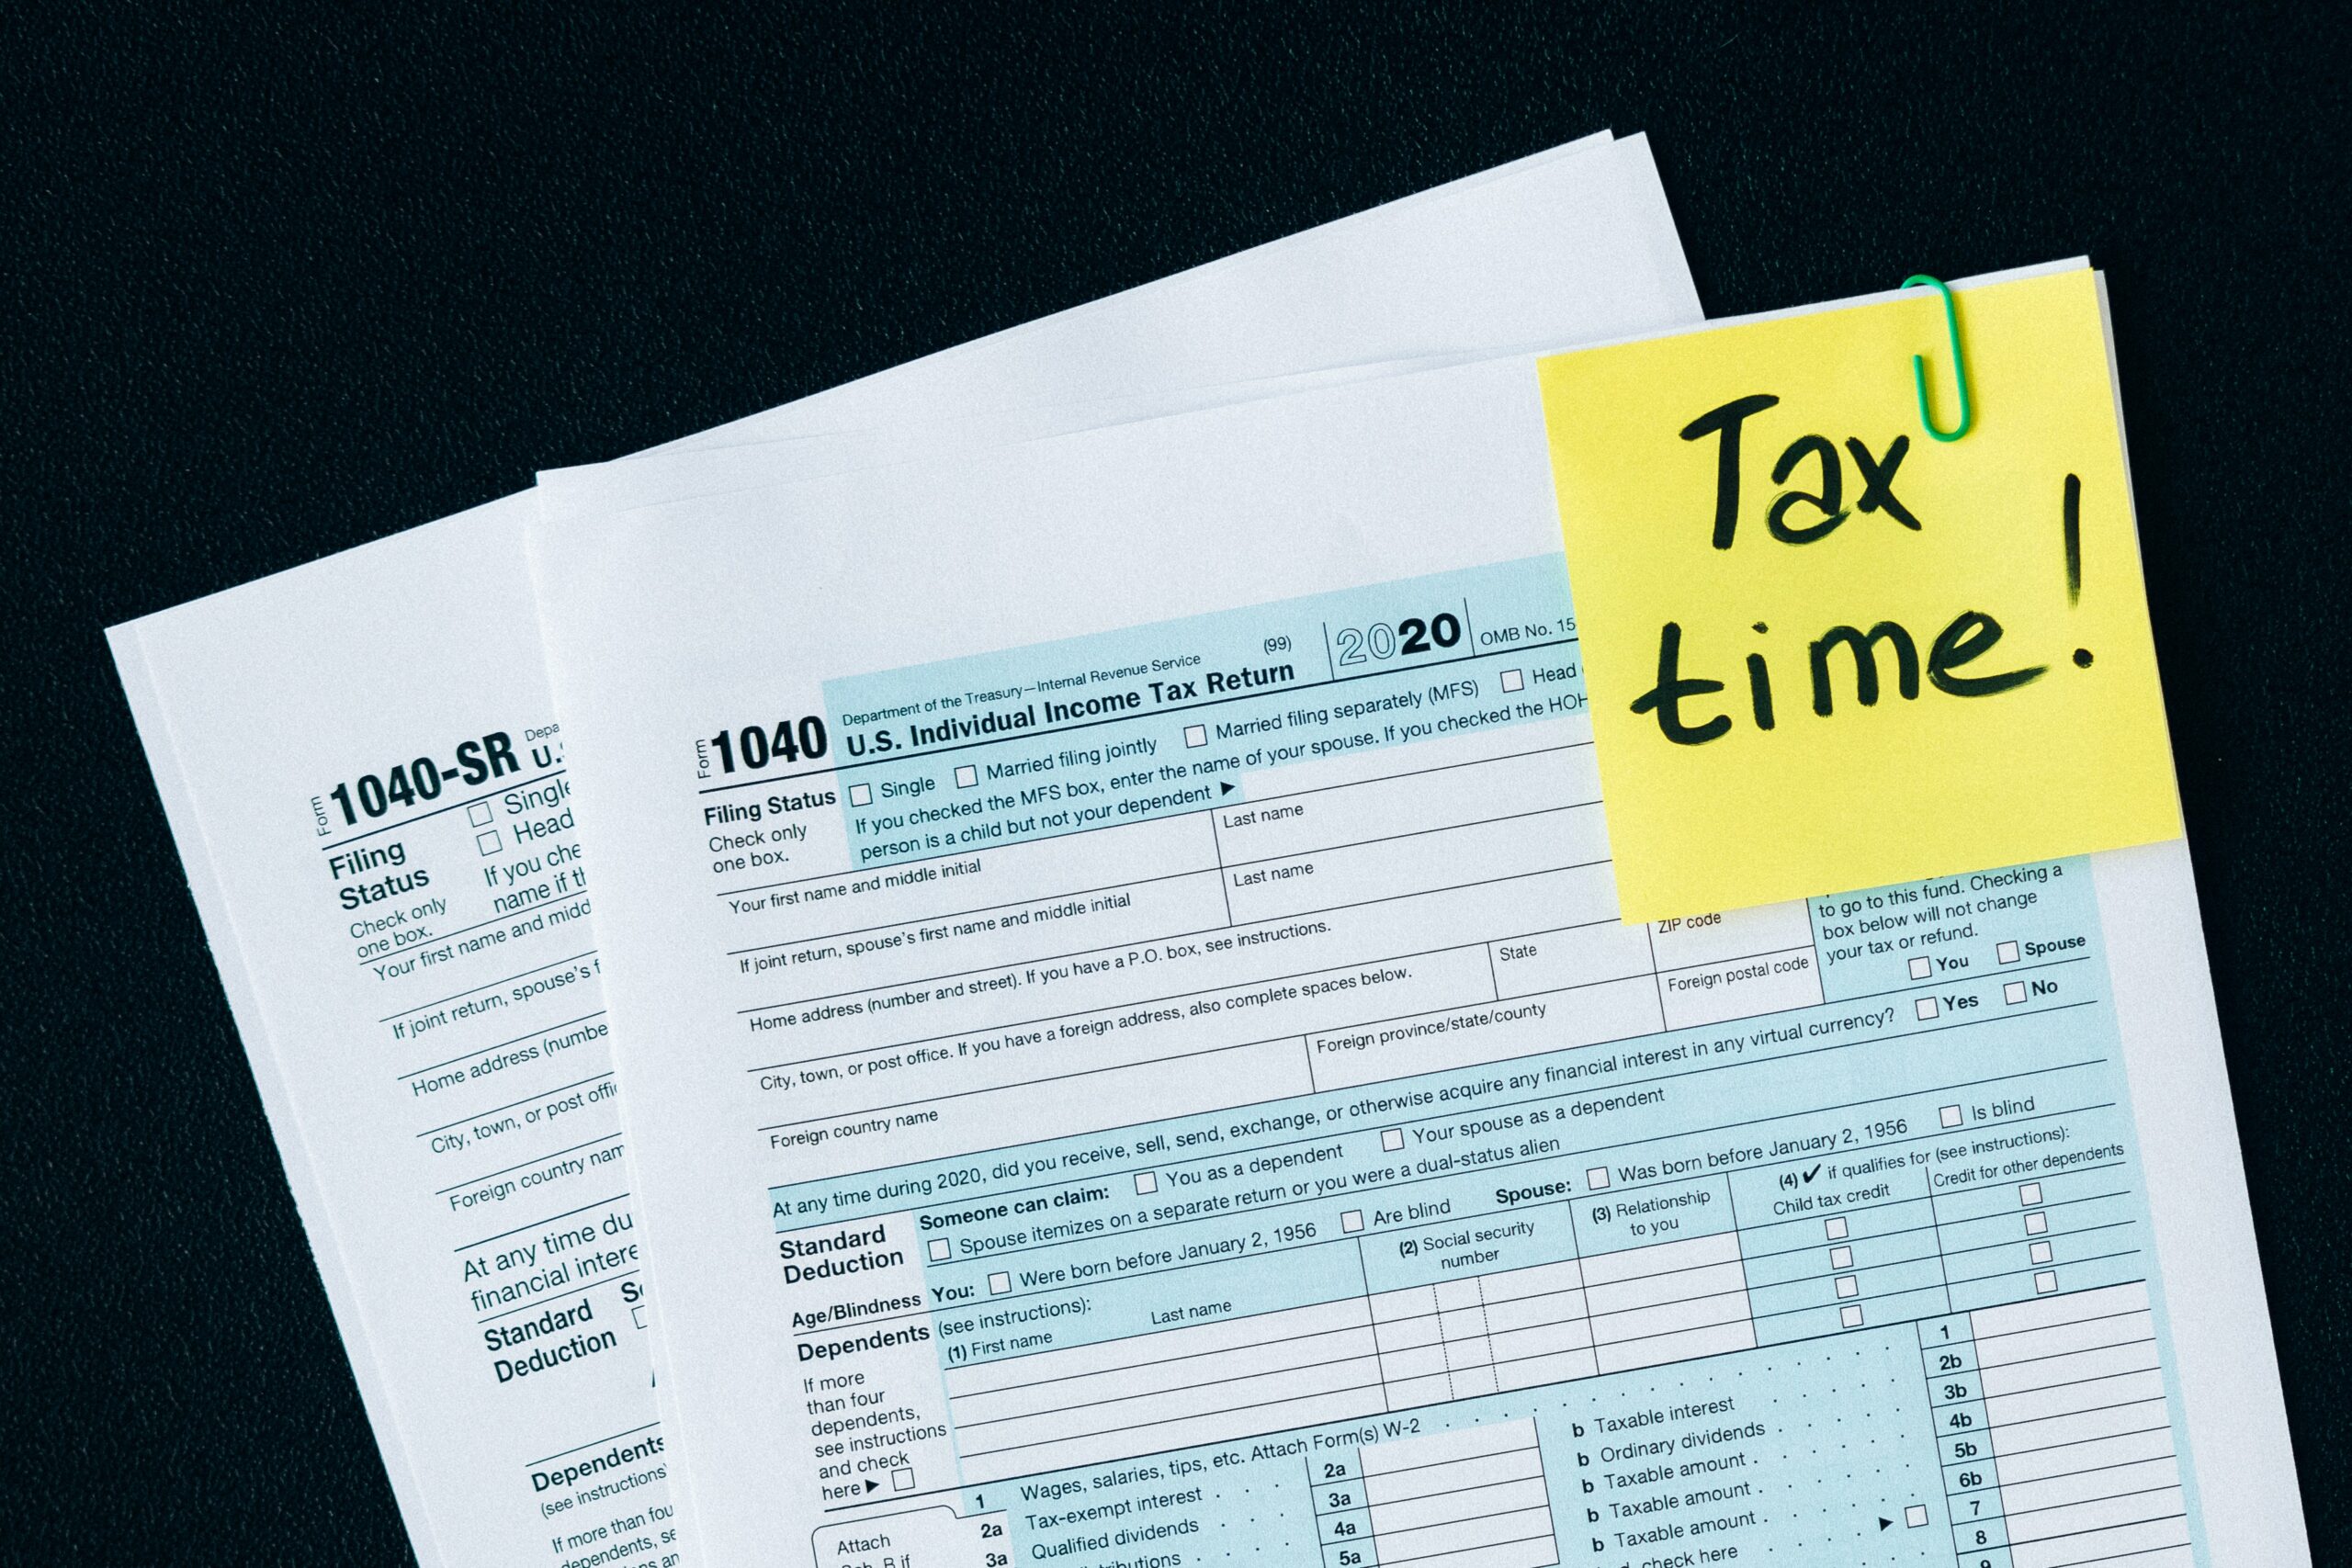 Tax Deadline - April 18th!